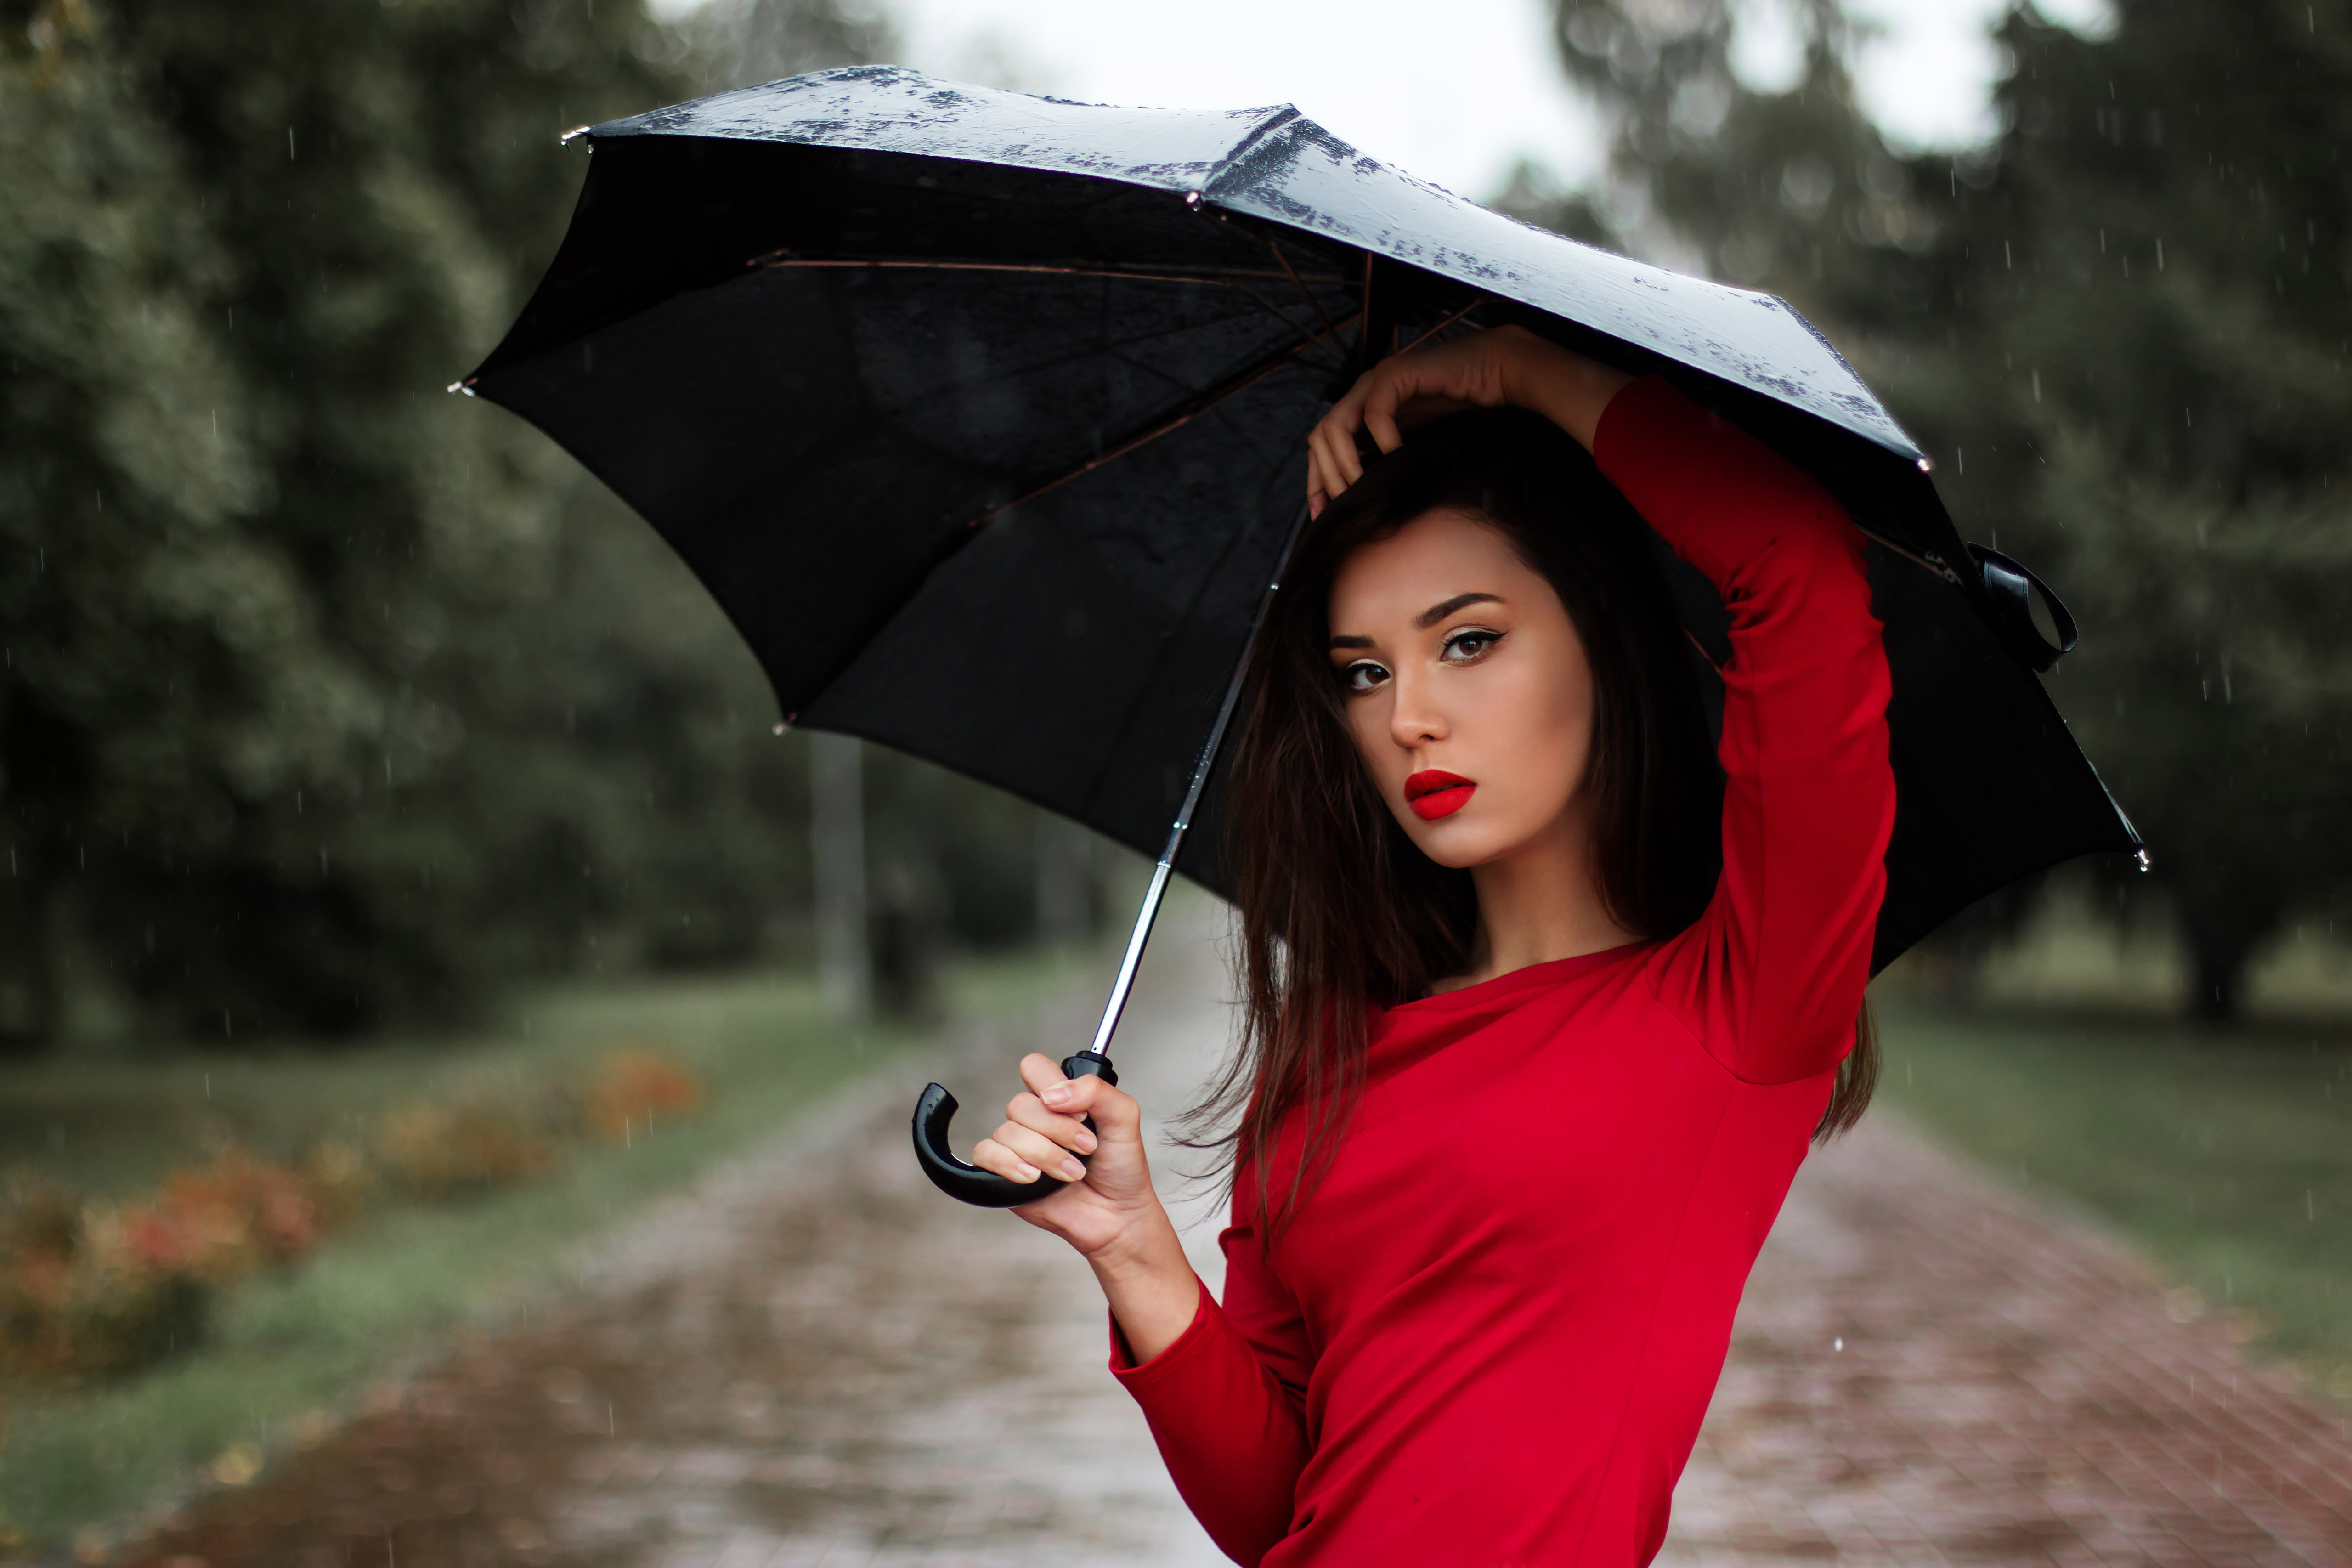 Umbrella Rain Red